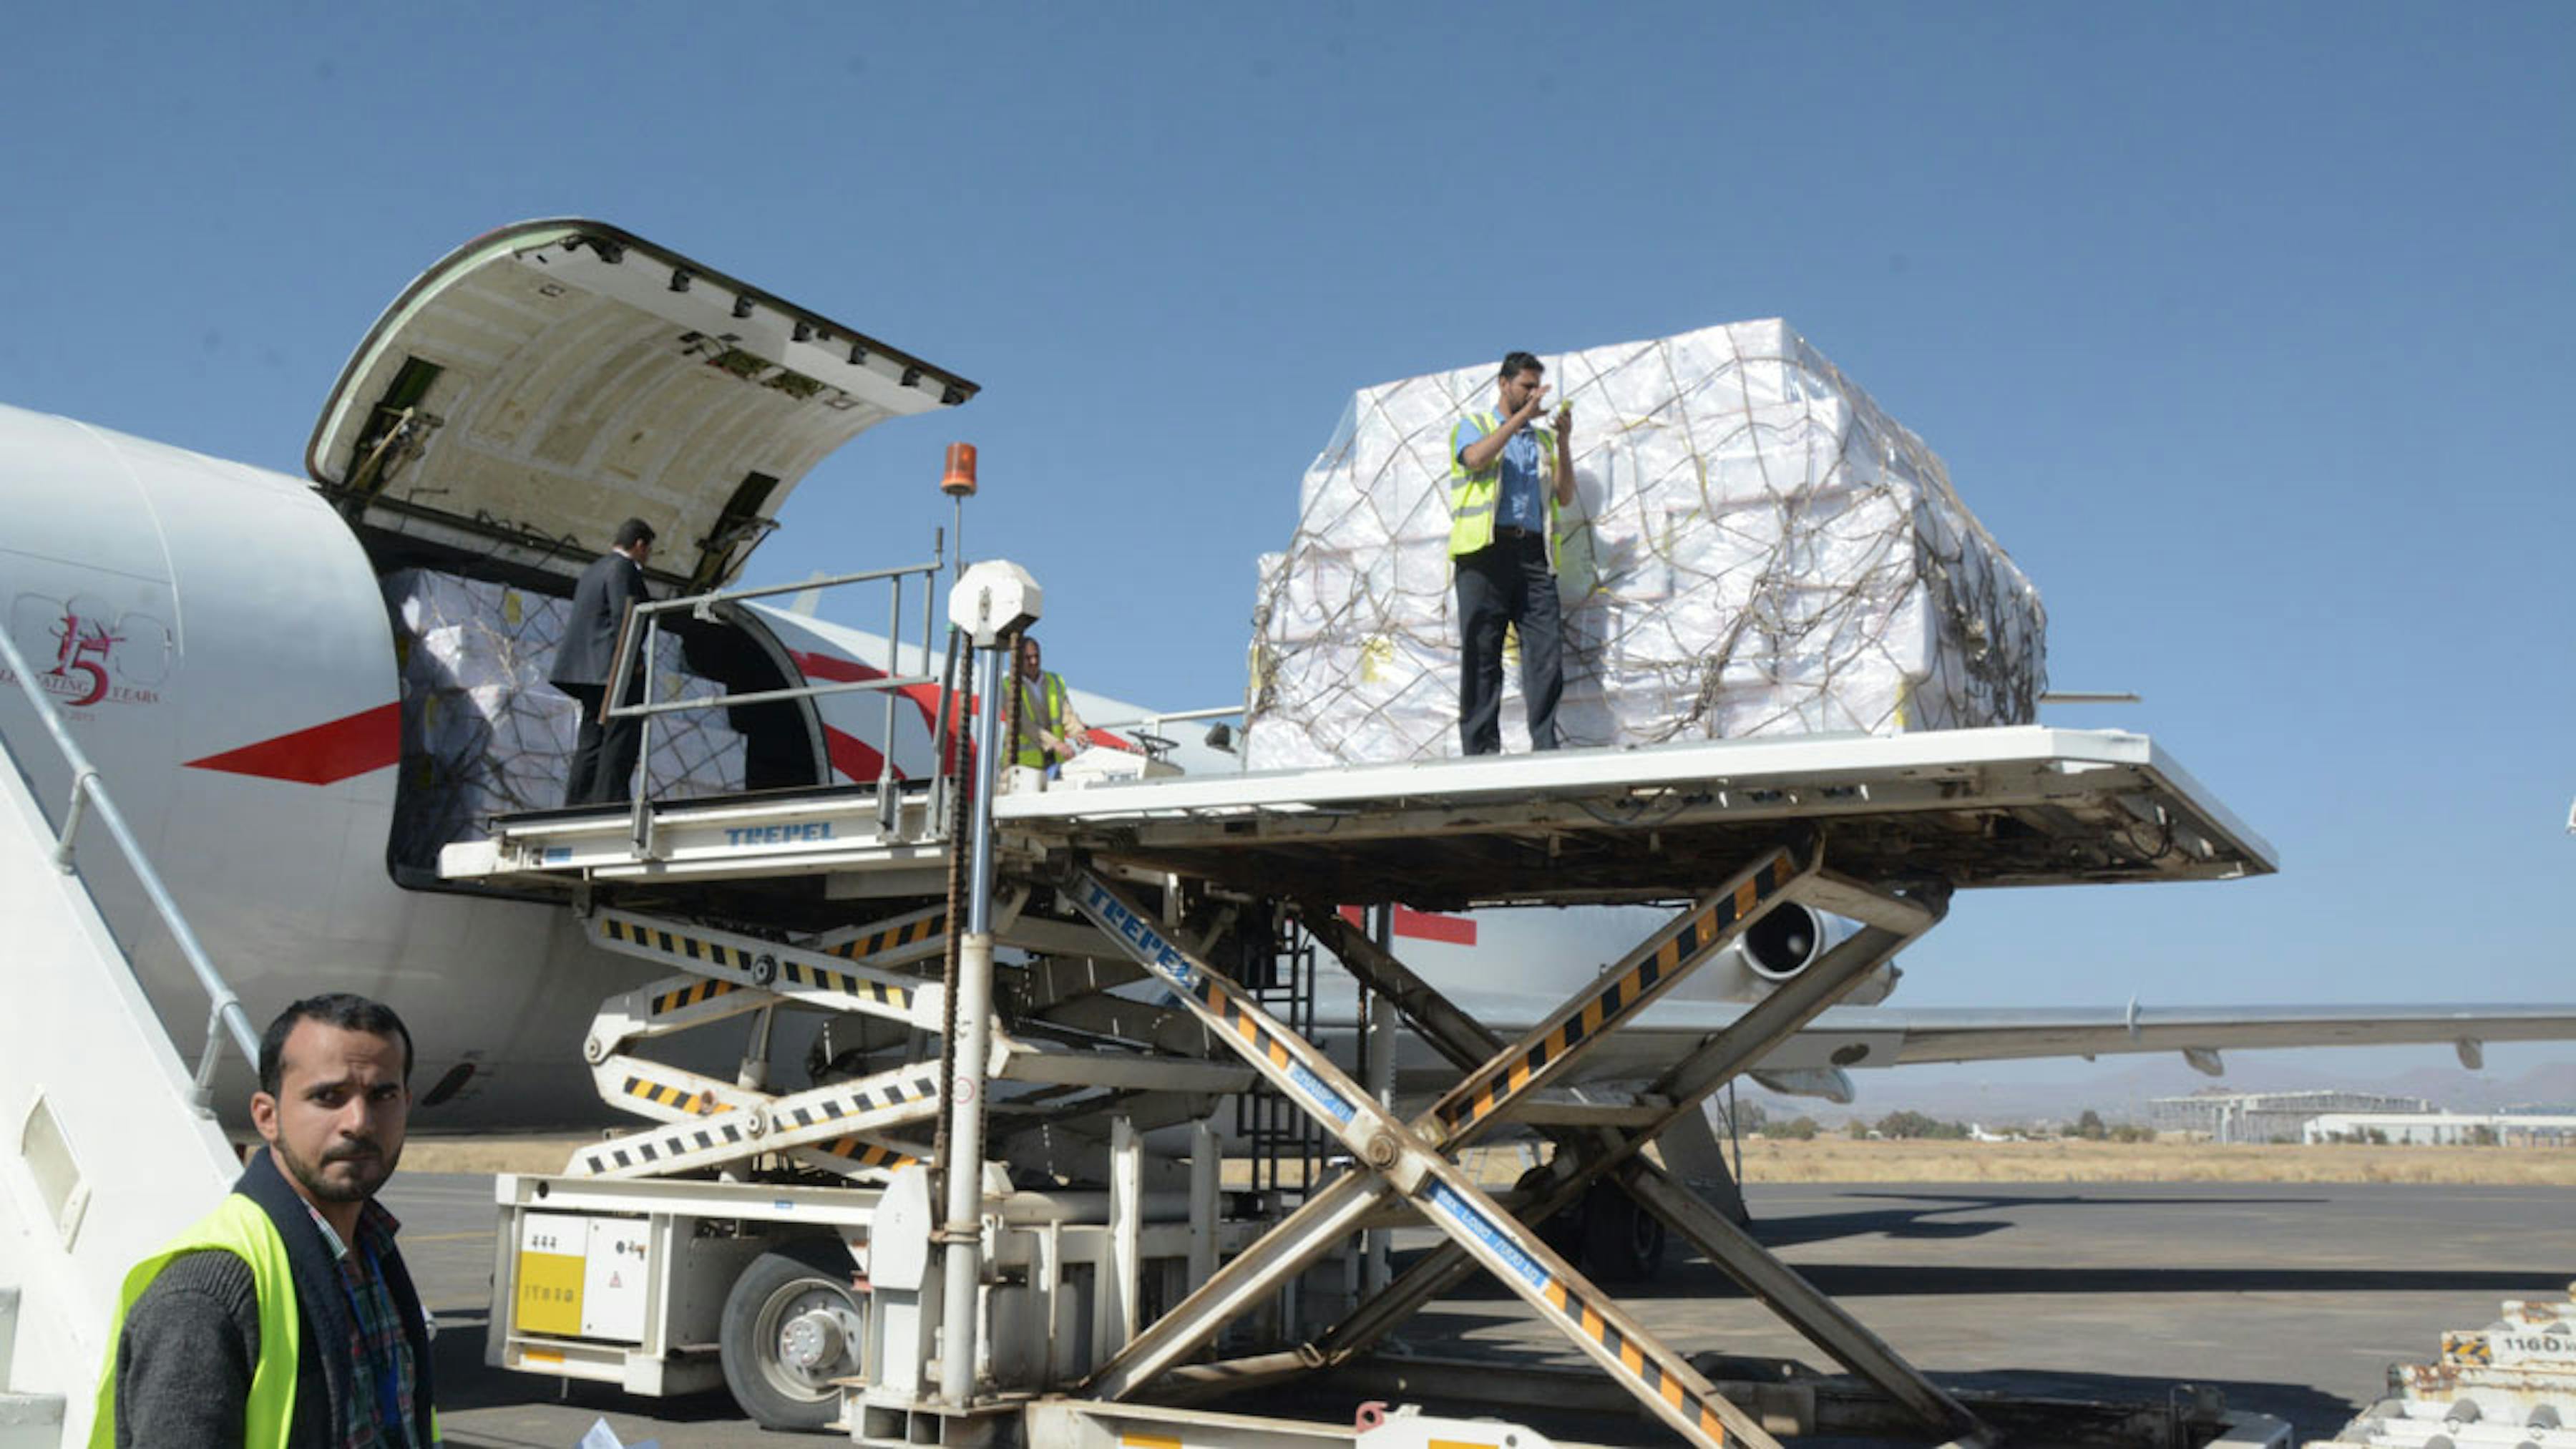 Un momento delle operazioni di scarico delle 15 tonnellate di aiuti umanitari dal cargo UNICEF all'aeroporto di Sana'a (Yemen) - ©UNICEF/2017/Ibrahim Alrawni